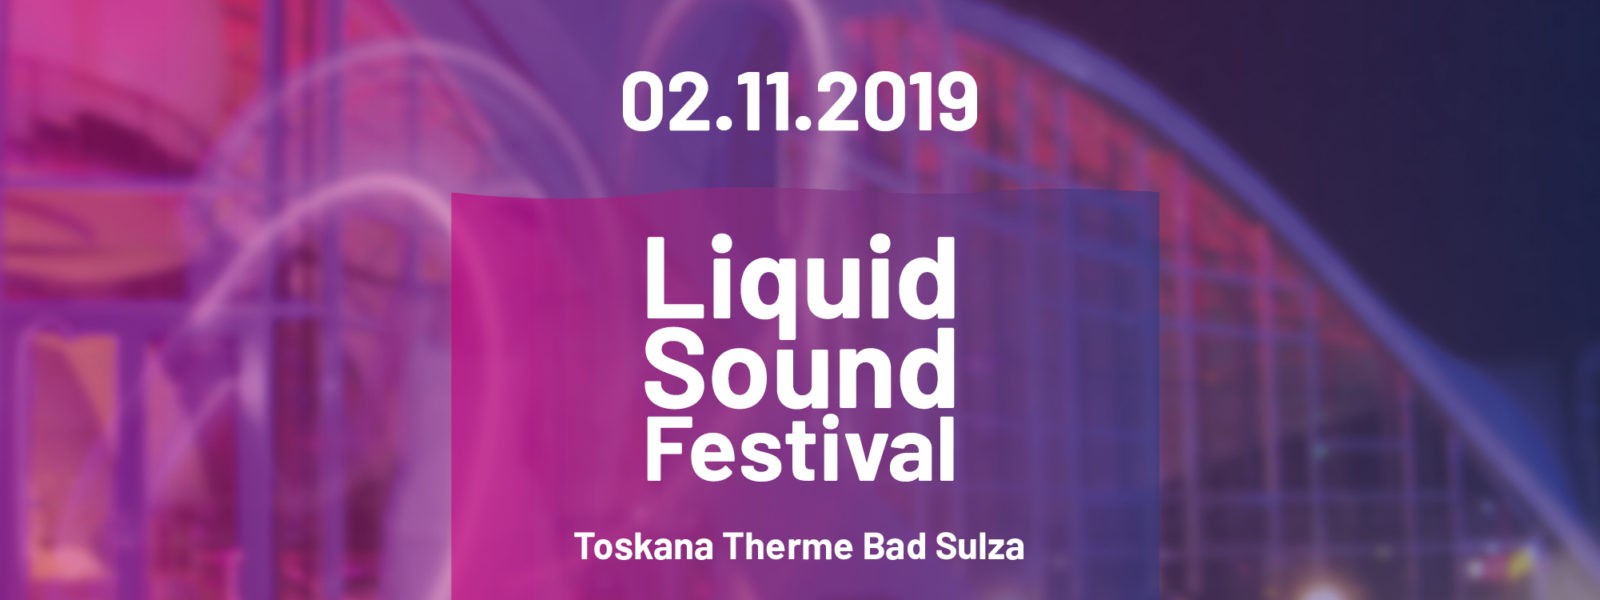 Liquid Sound Festival Bad Sulza 2019 Banner